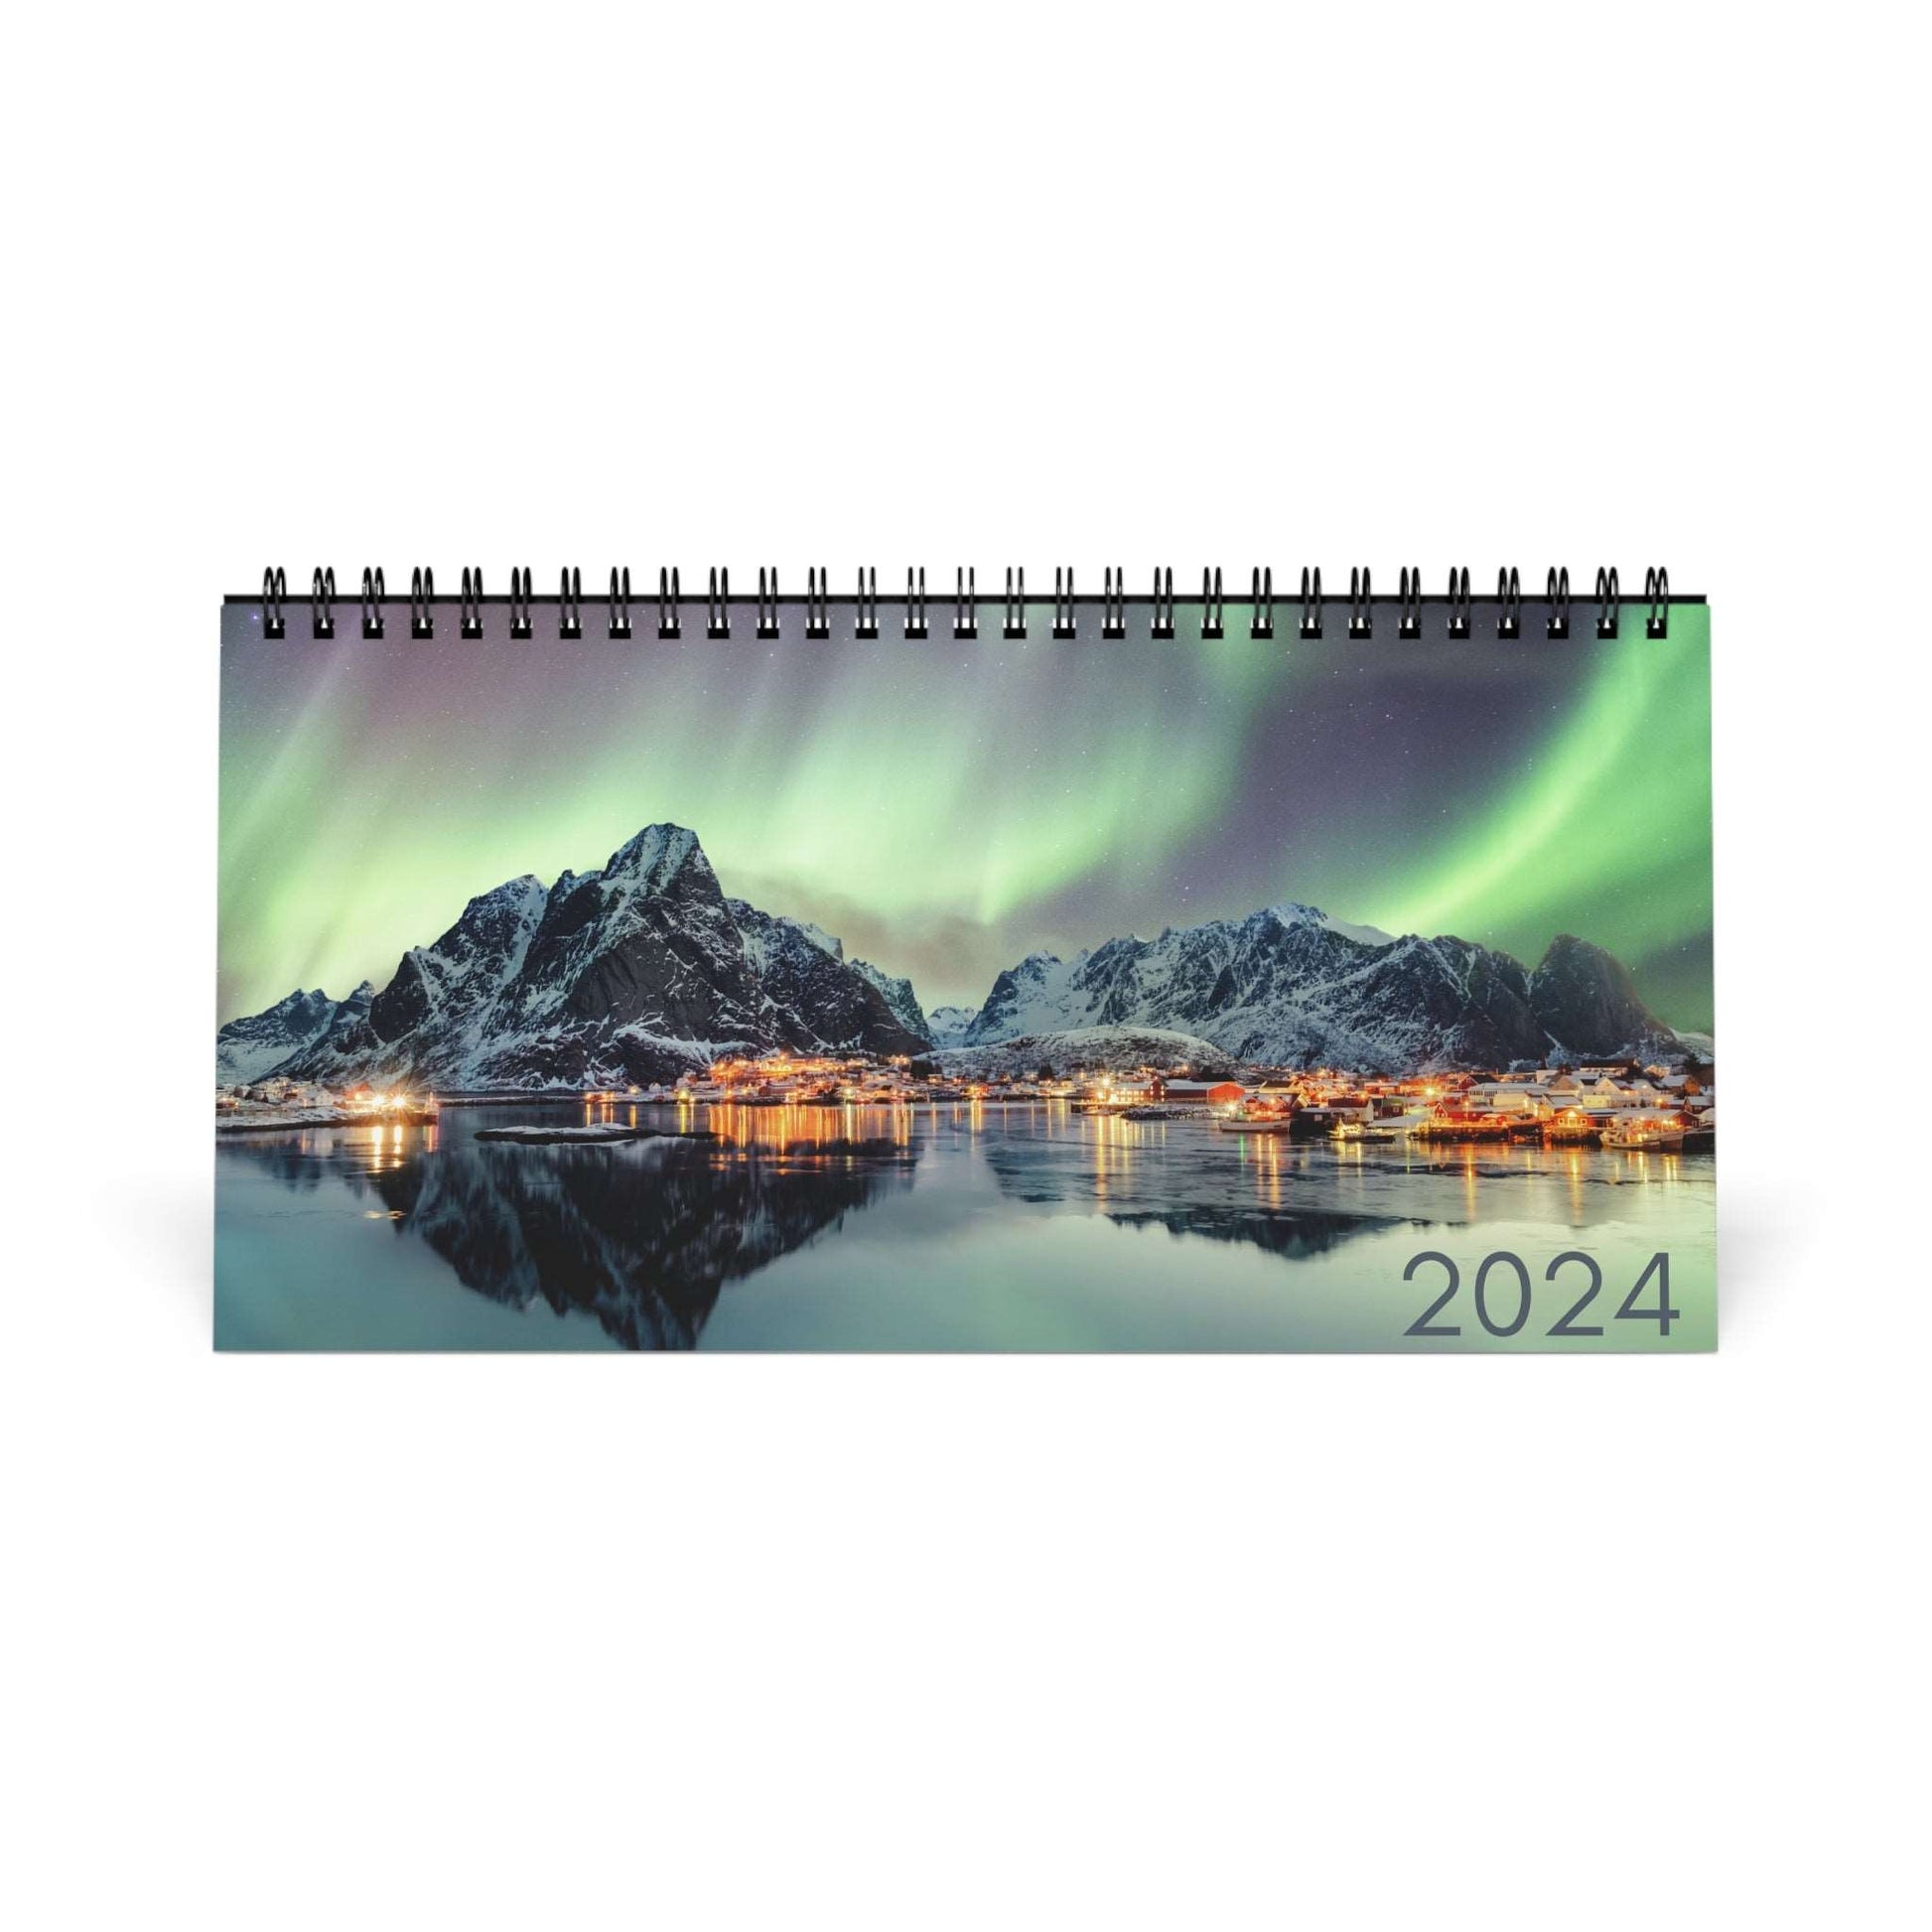 2024 Desk Calendar from Norway Calendar Norwegian gift Calendar 2024 Office Calendar Norway Gift Calendar Norwegian Heritage Northern Lights